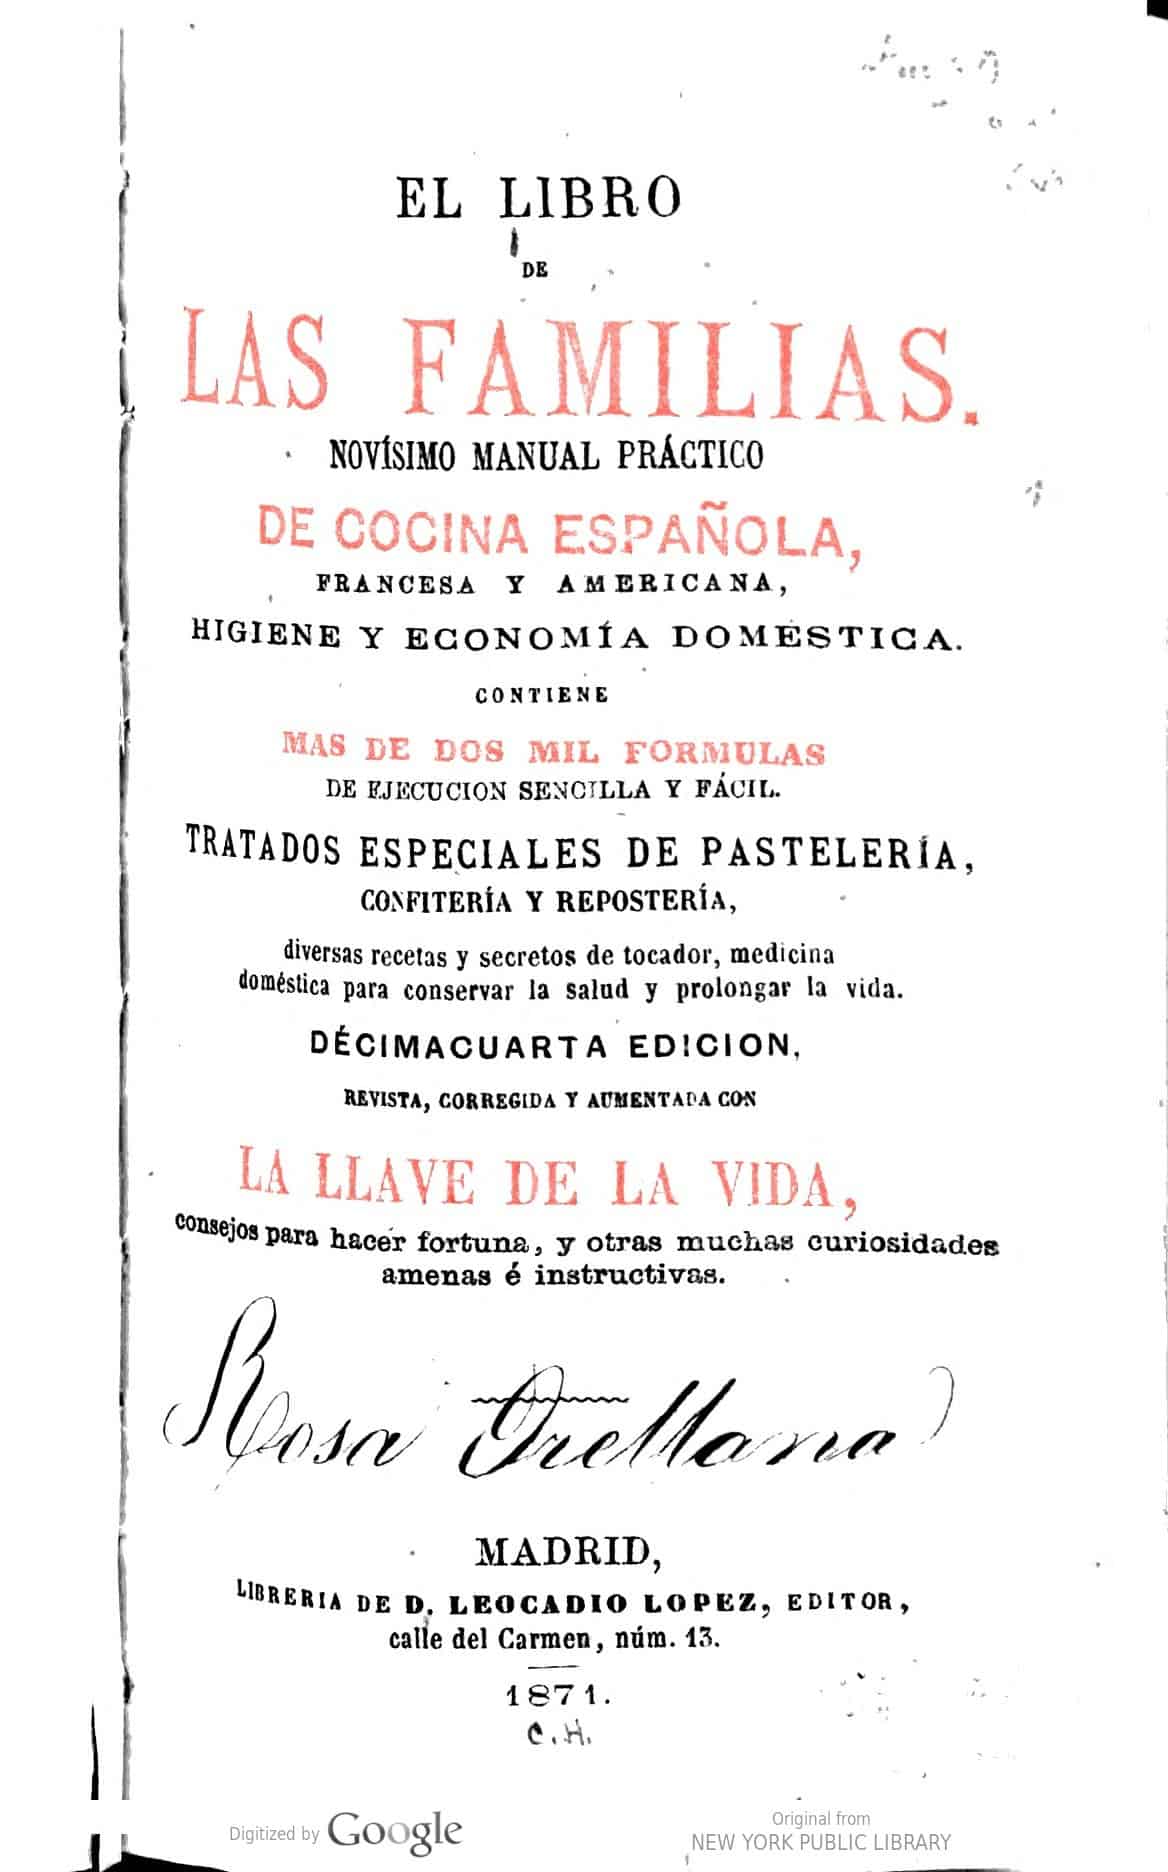 El libro de las familias. Novísimo manual práctico de cocina española, francesa y americana, higiene y economía doméstica.